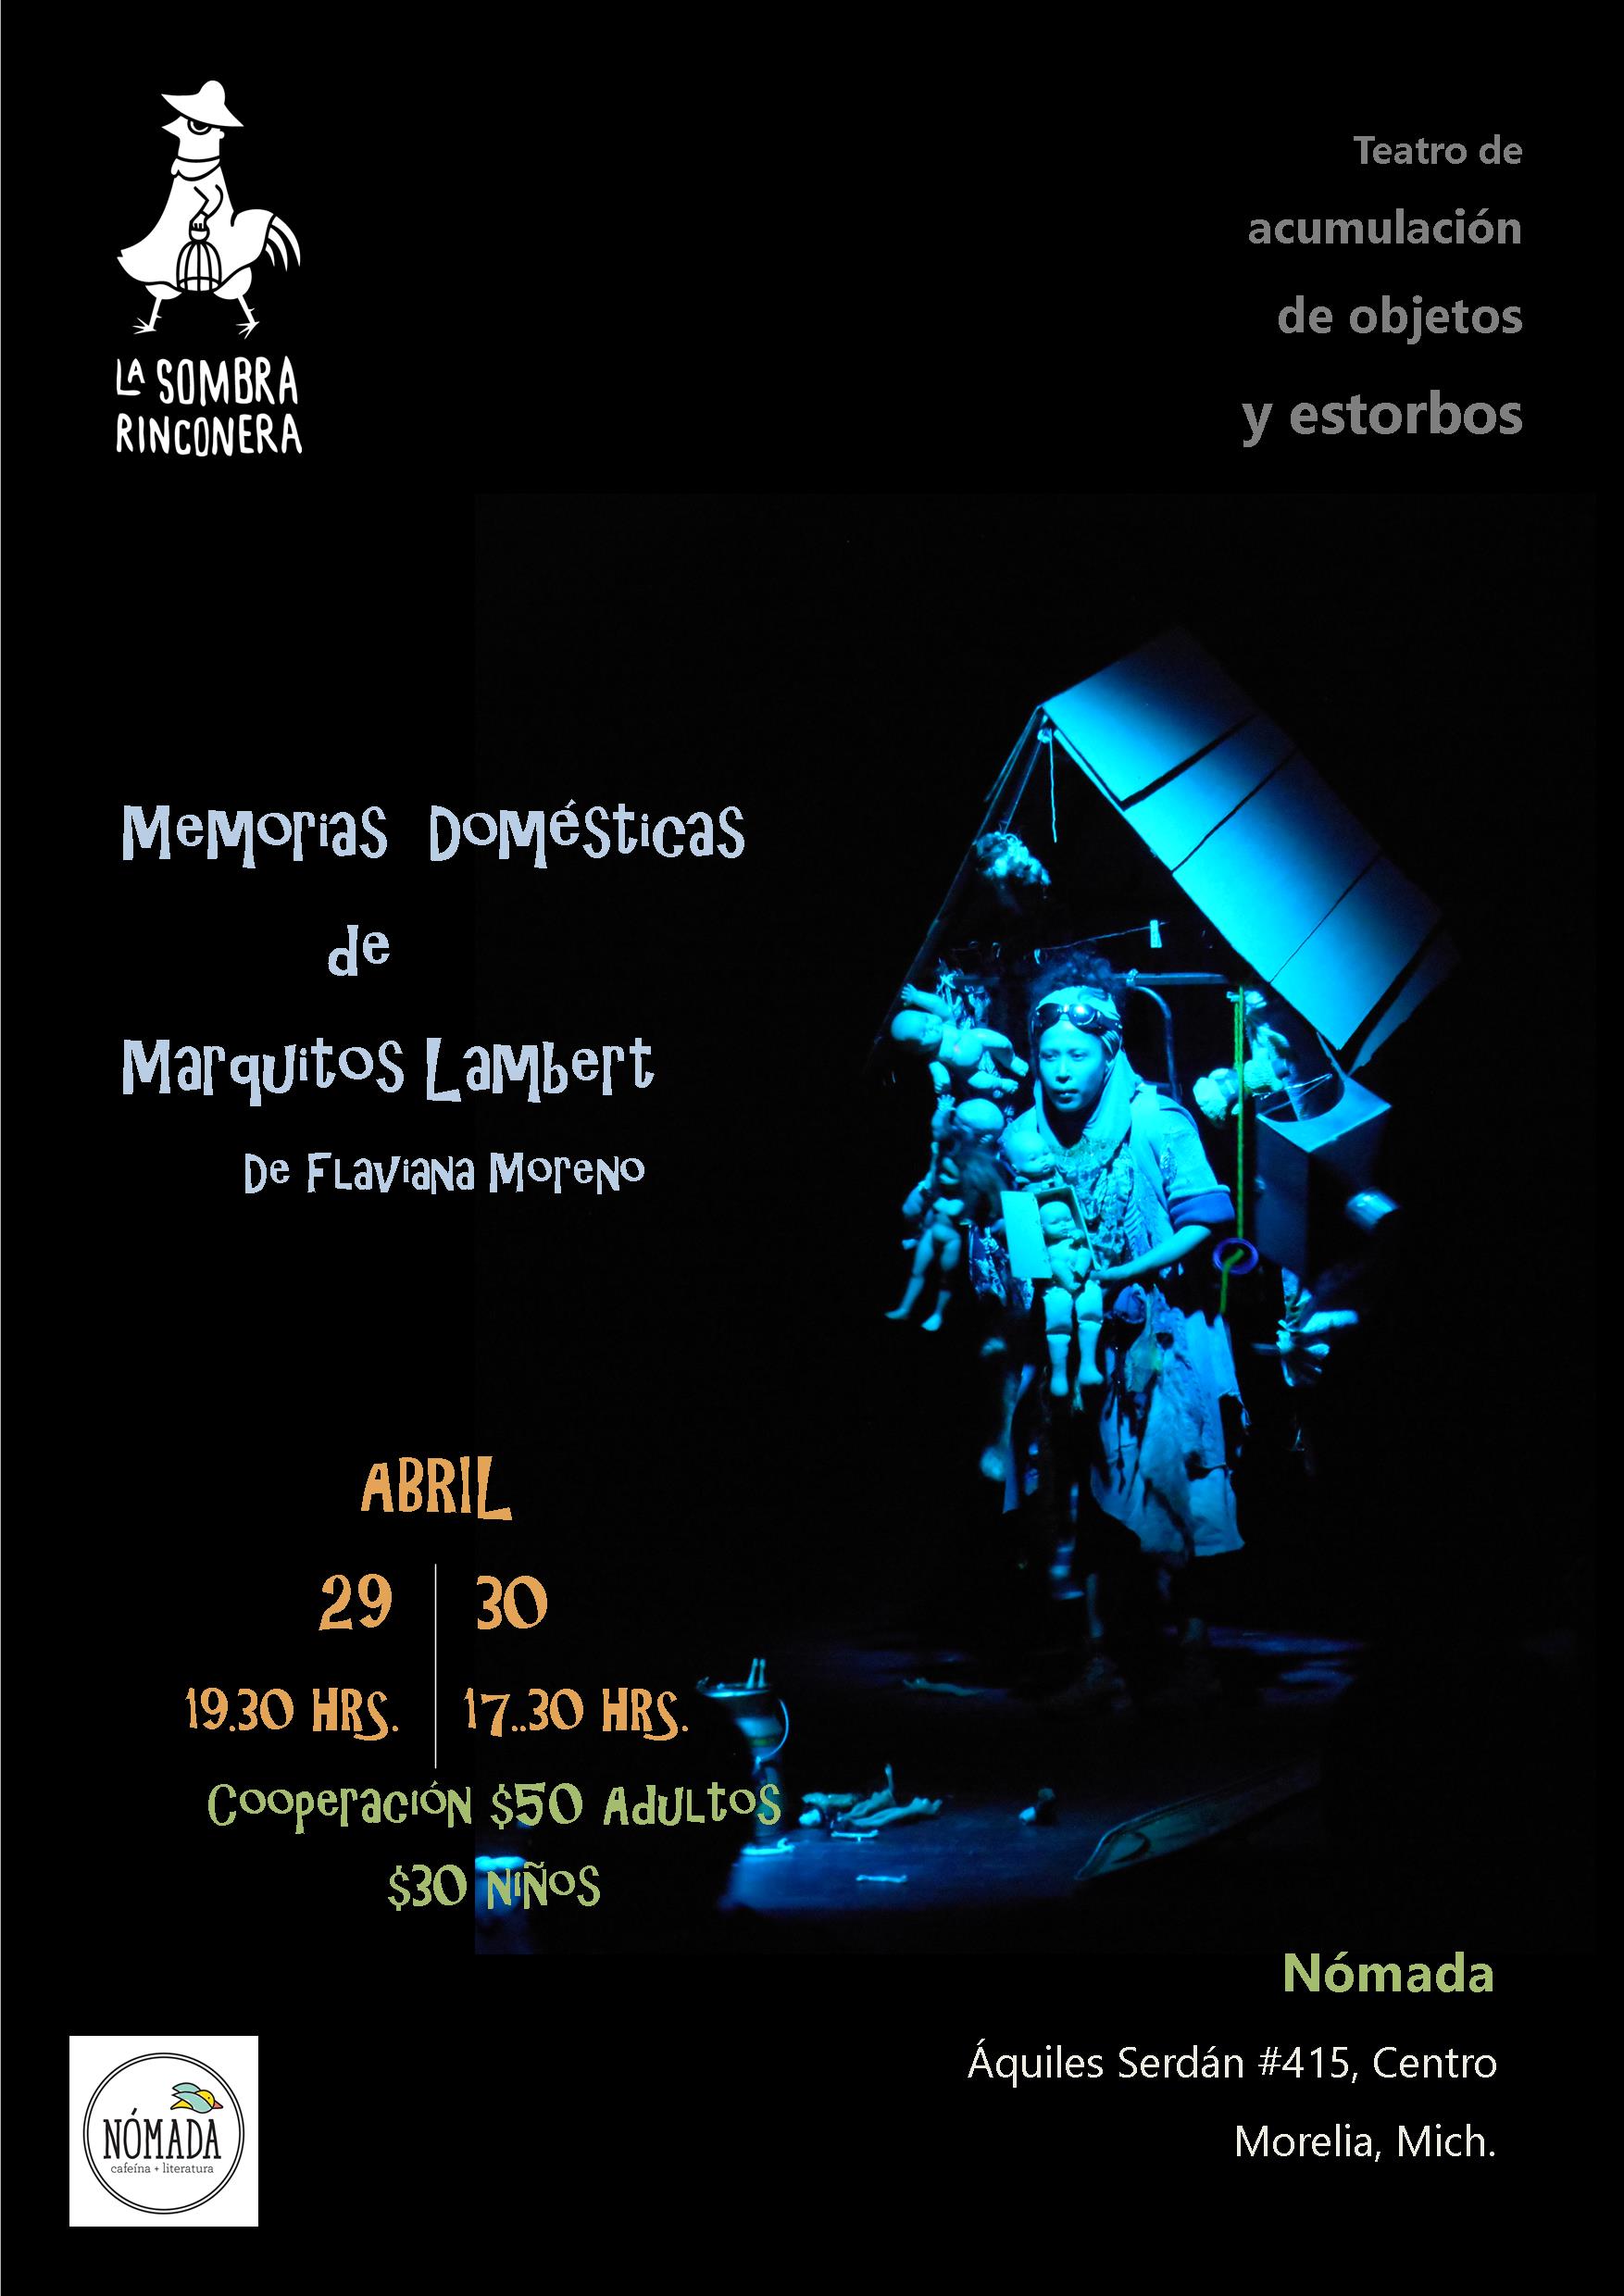 Presentaciones de La Sombra Rinconera (teatro de acumulación de objetos y estorbos) en Morelia, Mich. Próximos 29 y 30 de Abril en Nómada